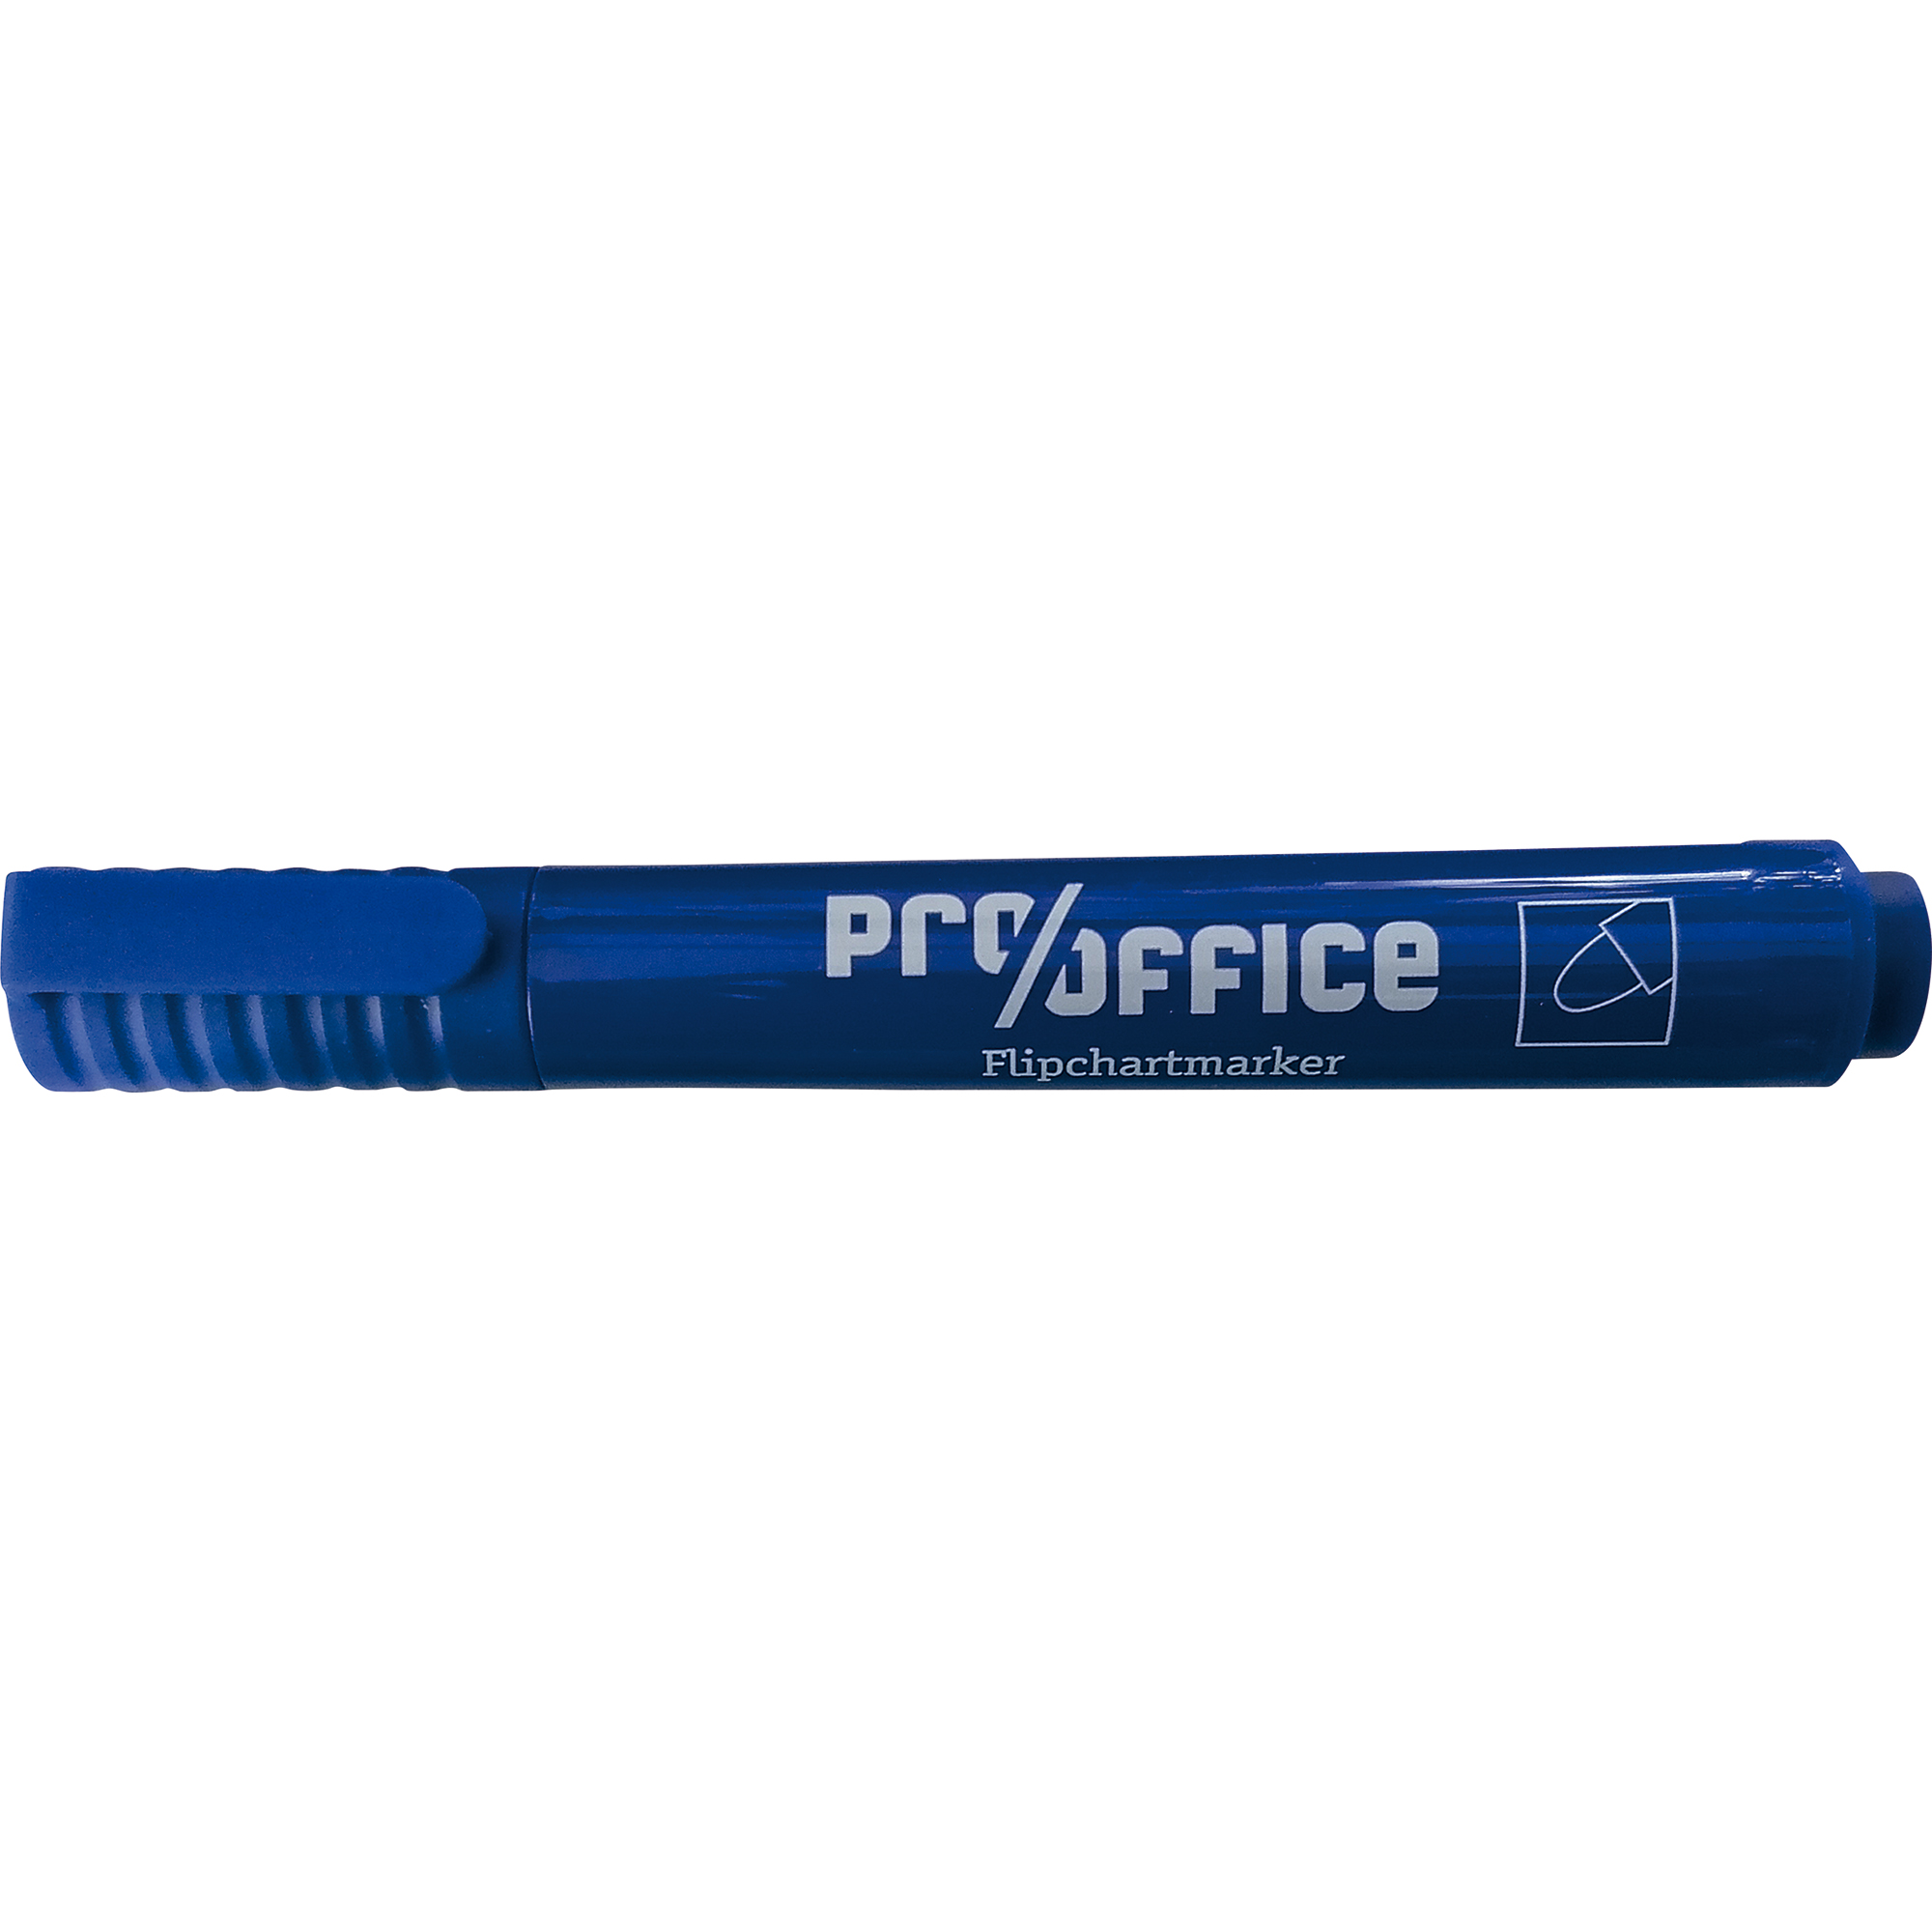 Pro/office Flipchartmarker 1-3mm mit Rundspitze blau